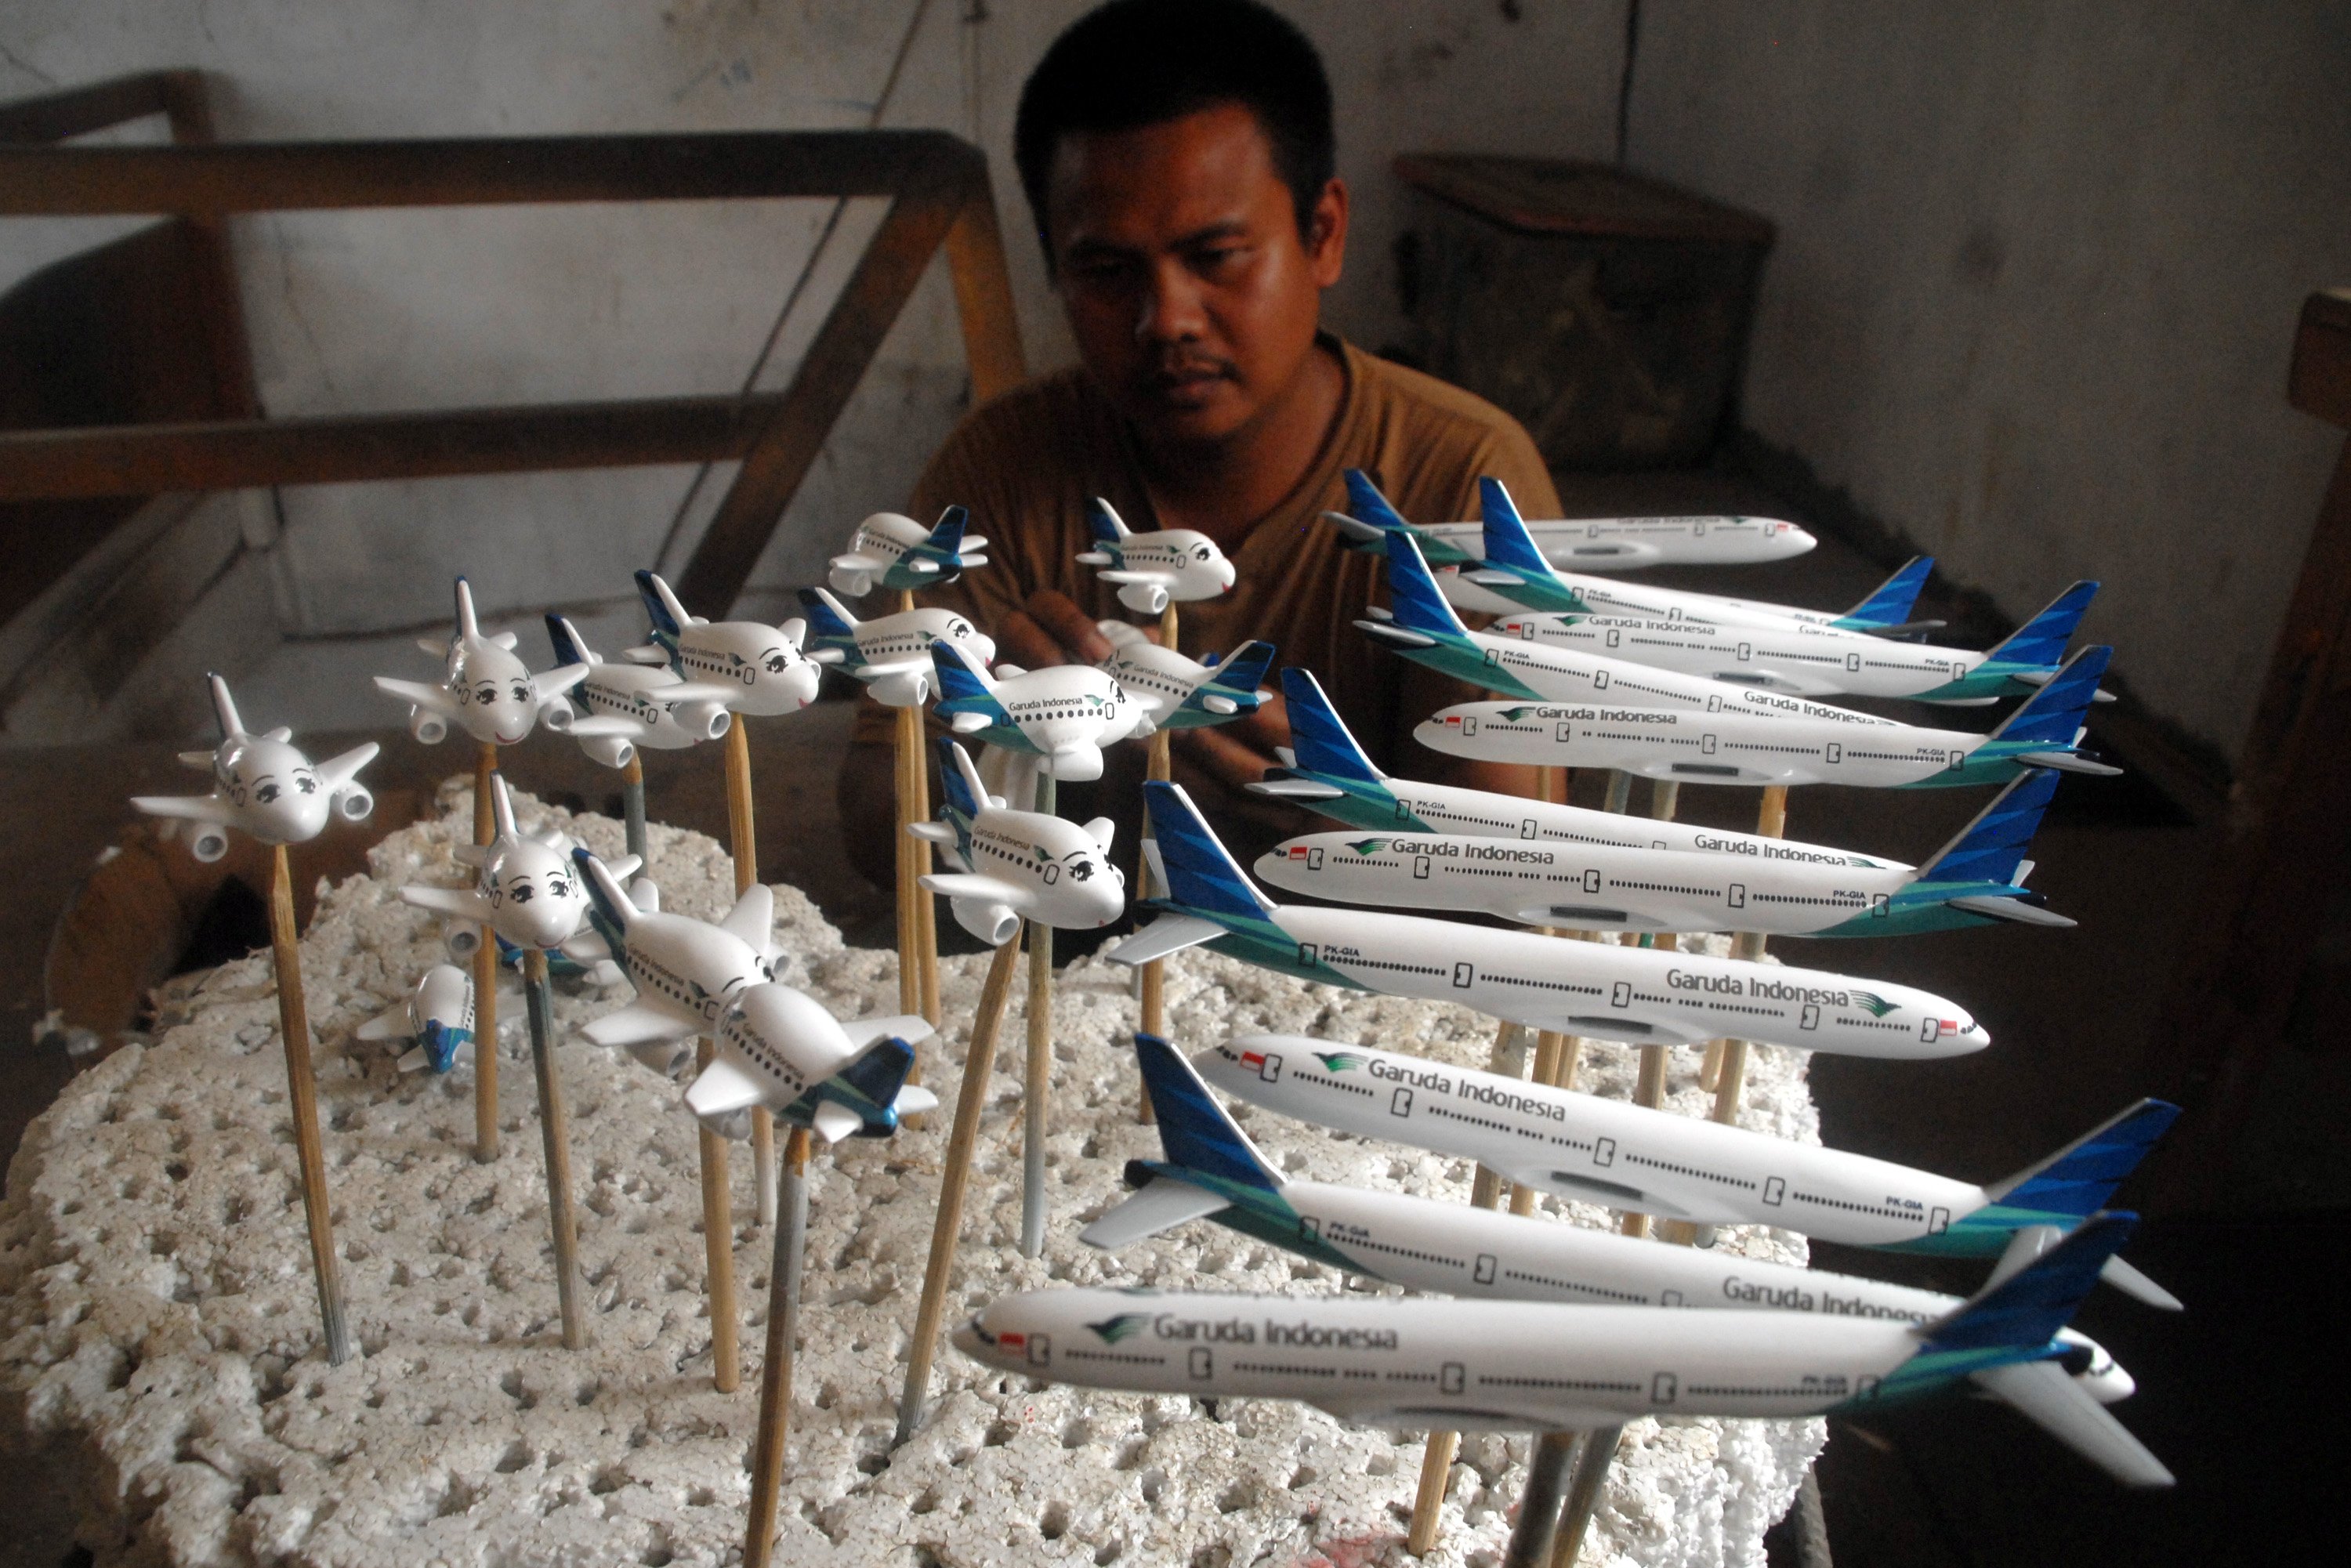 Bagi pecinta miniatur pesawat terbang, bisa langsung datang ke Bogor tepatnya di daerah Dramaga, ke sentra kerajinan replika pesawat yang berbahan dasar resin dengan bahan tambahan metal dan kayu.